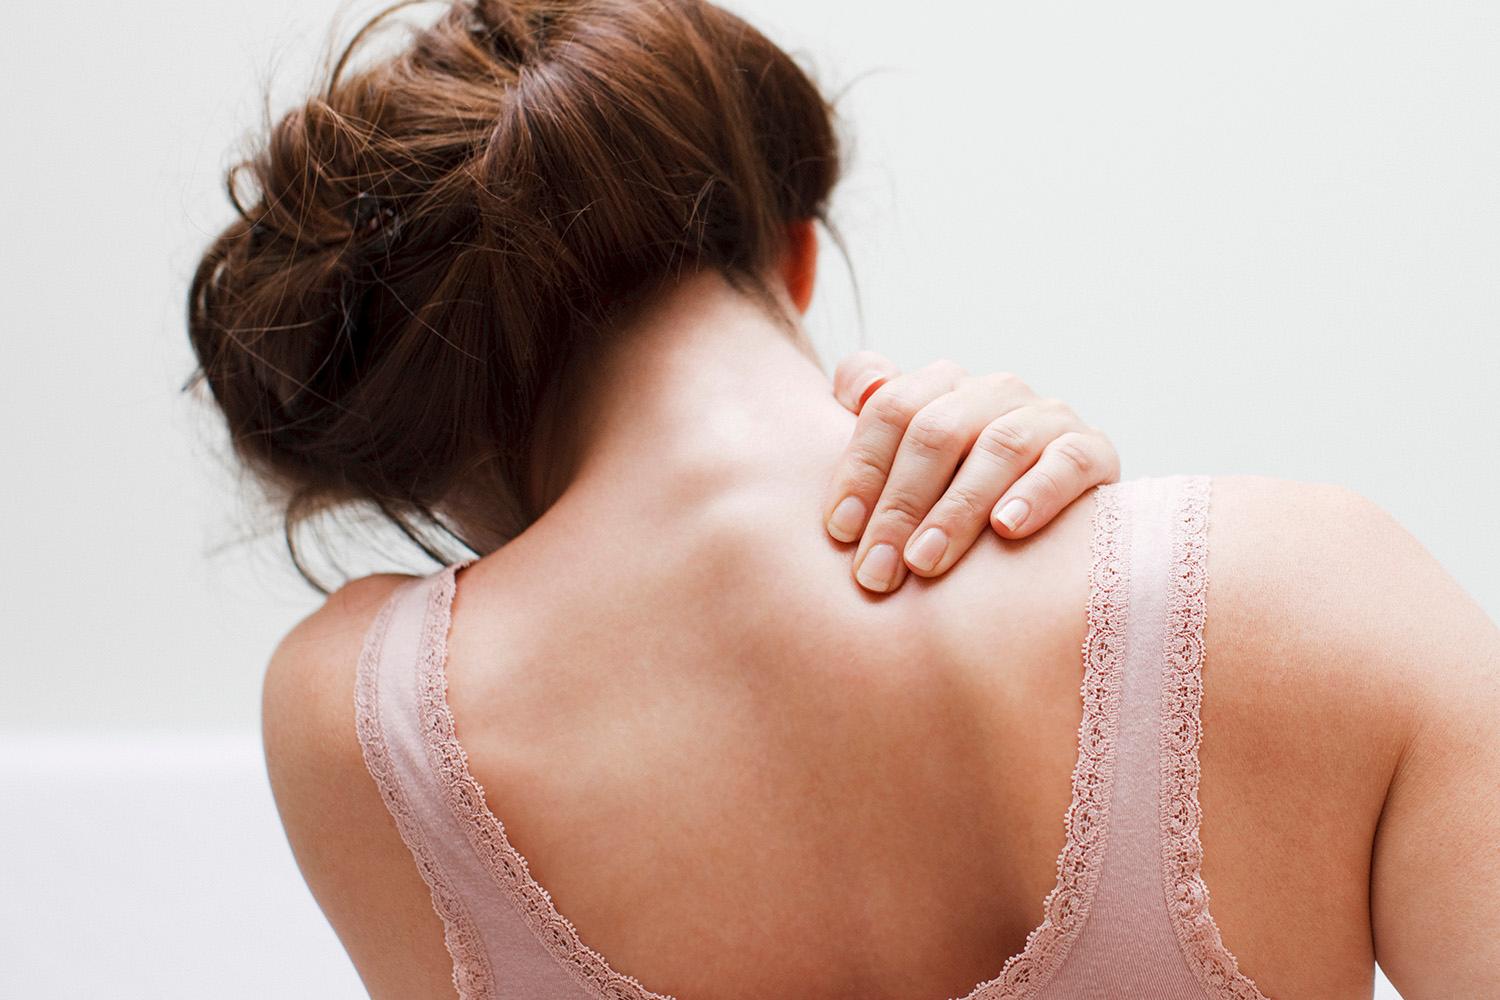 Shoulder pain during pregnancy – Normal or Alarming?